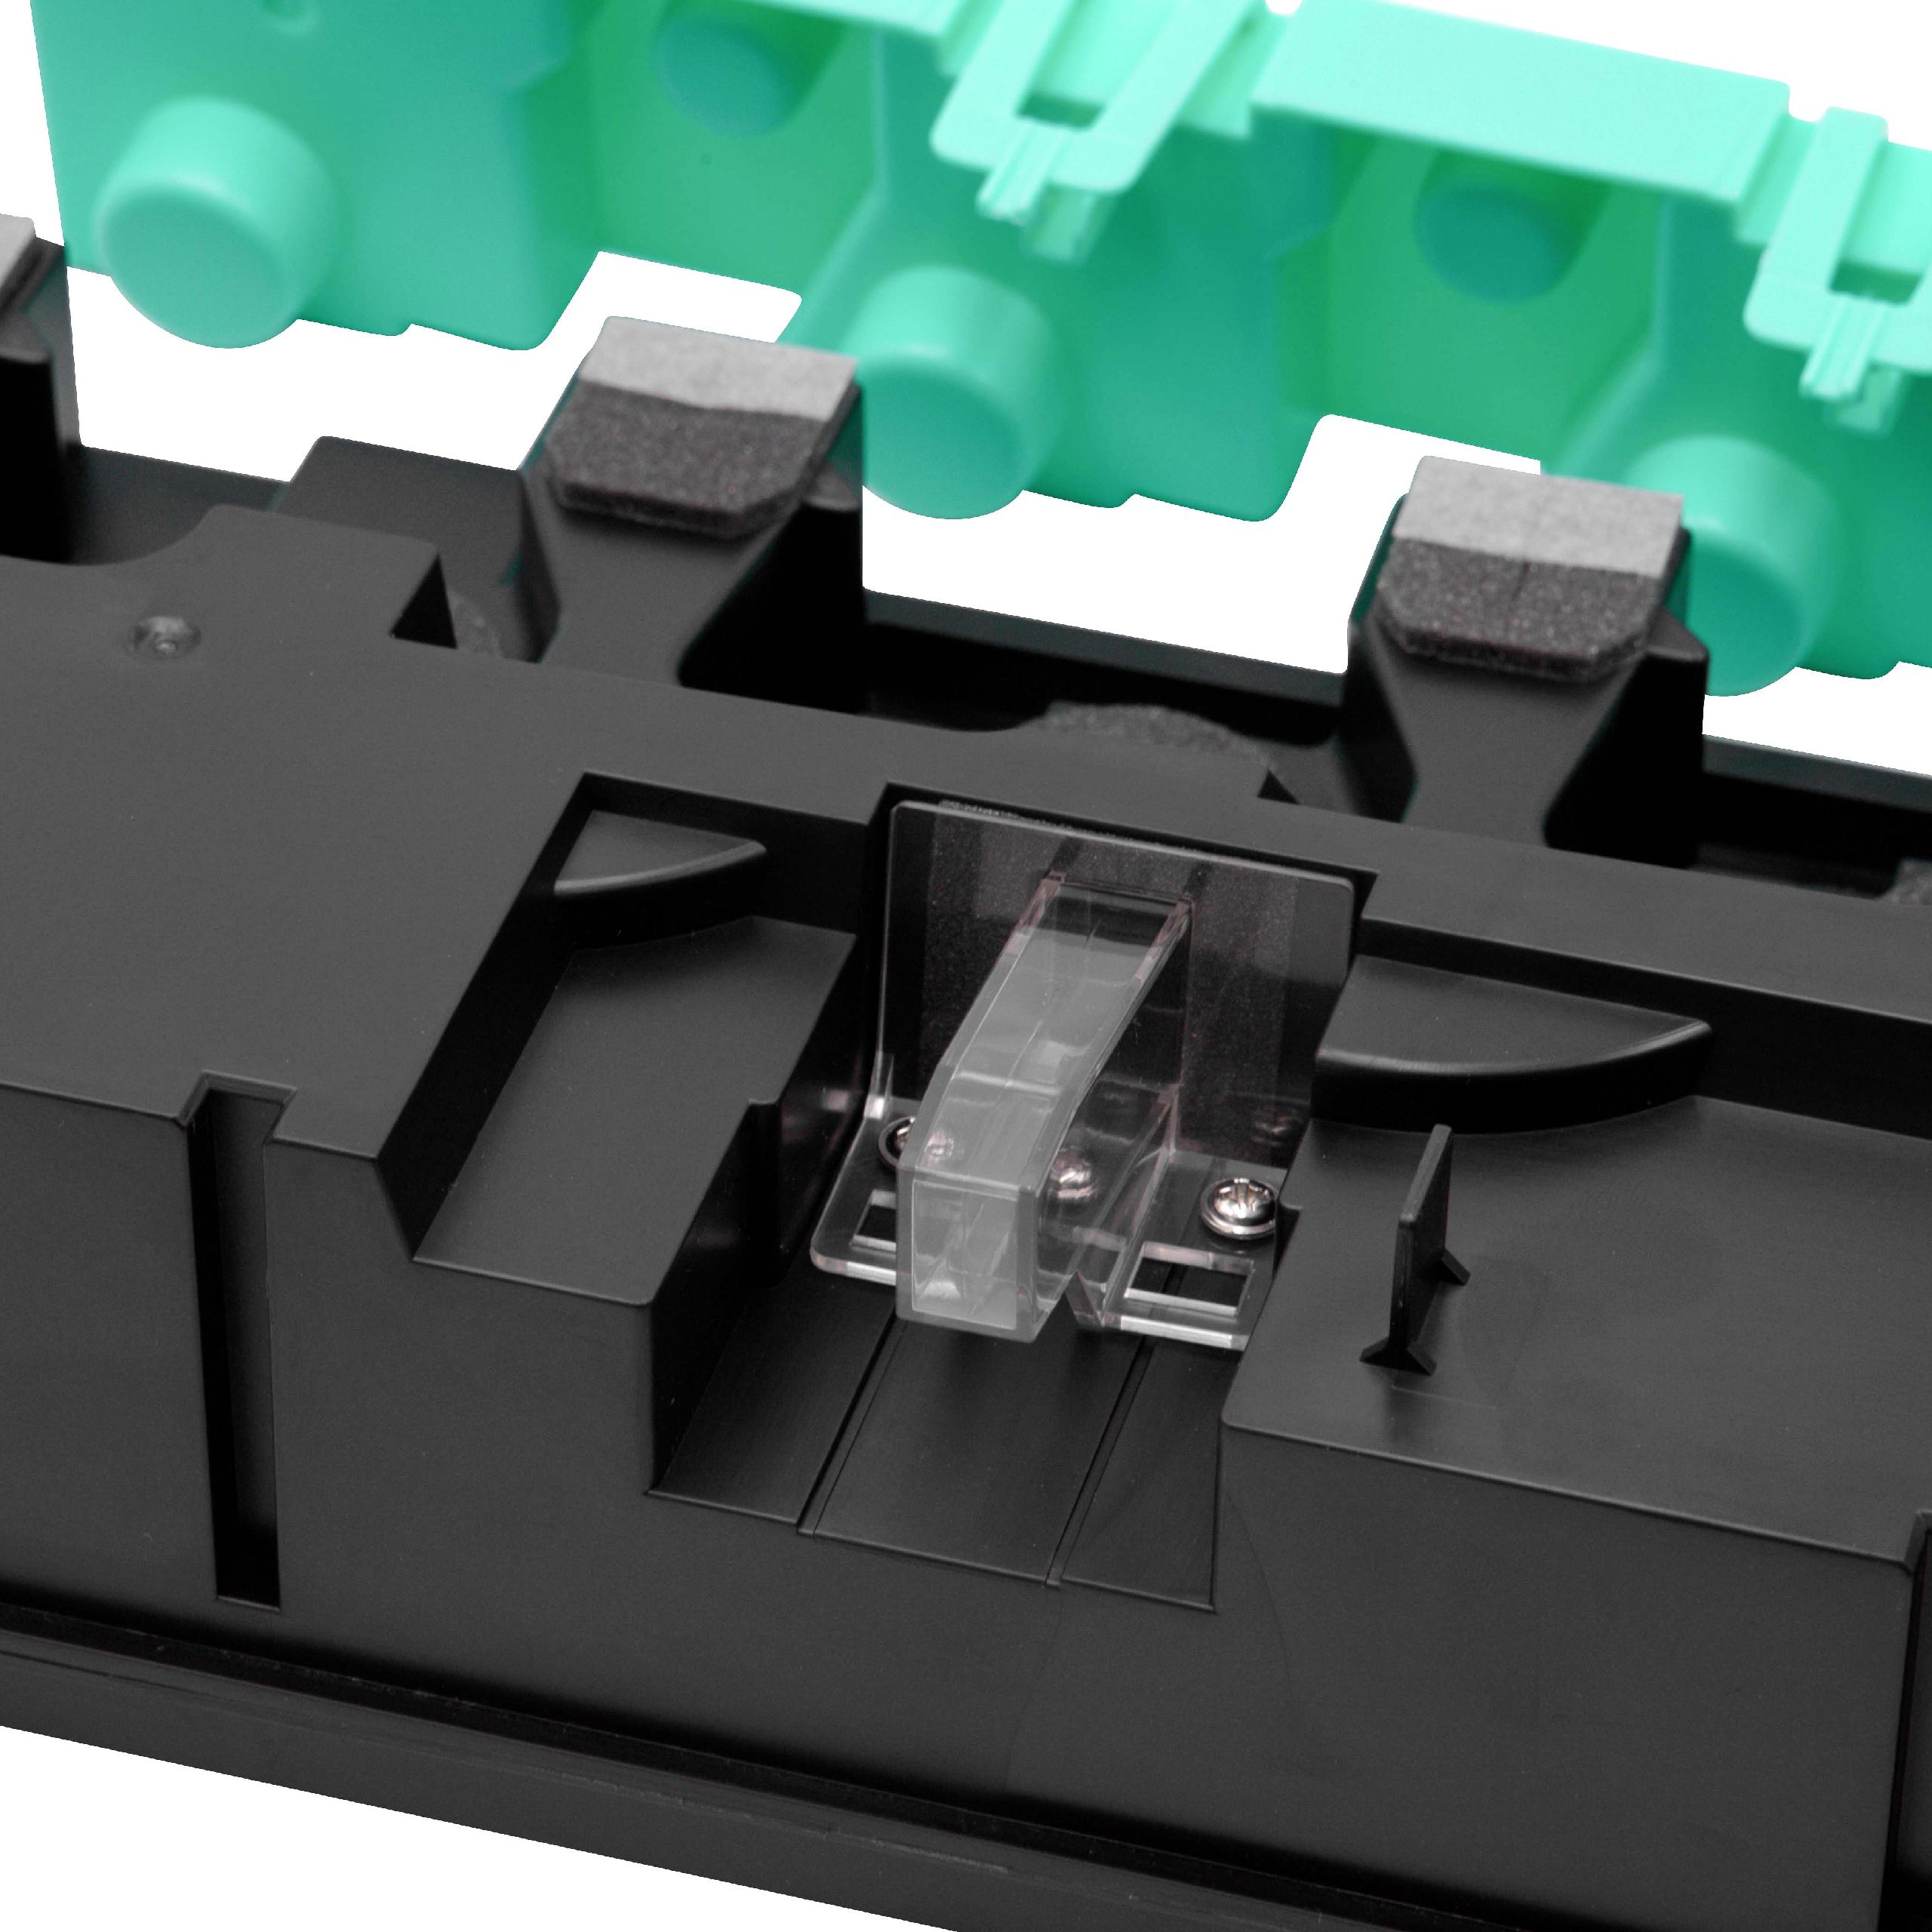 Pojemnik na zużyty toner do drukarki laserowej zam. Konica Minolta WX-103, A4NN-WY3, A4NN-WY1 - czarny